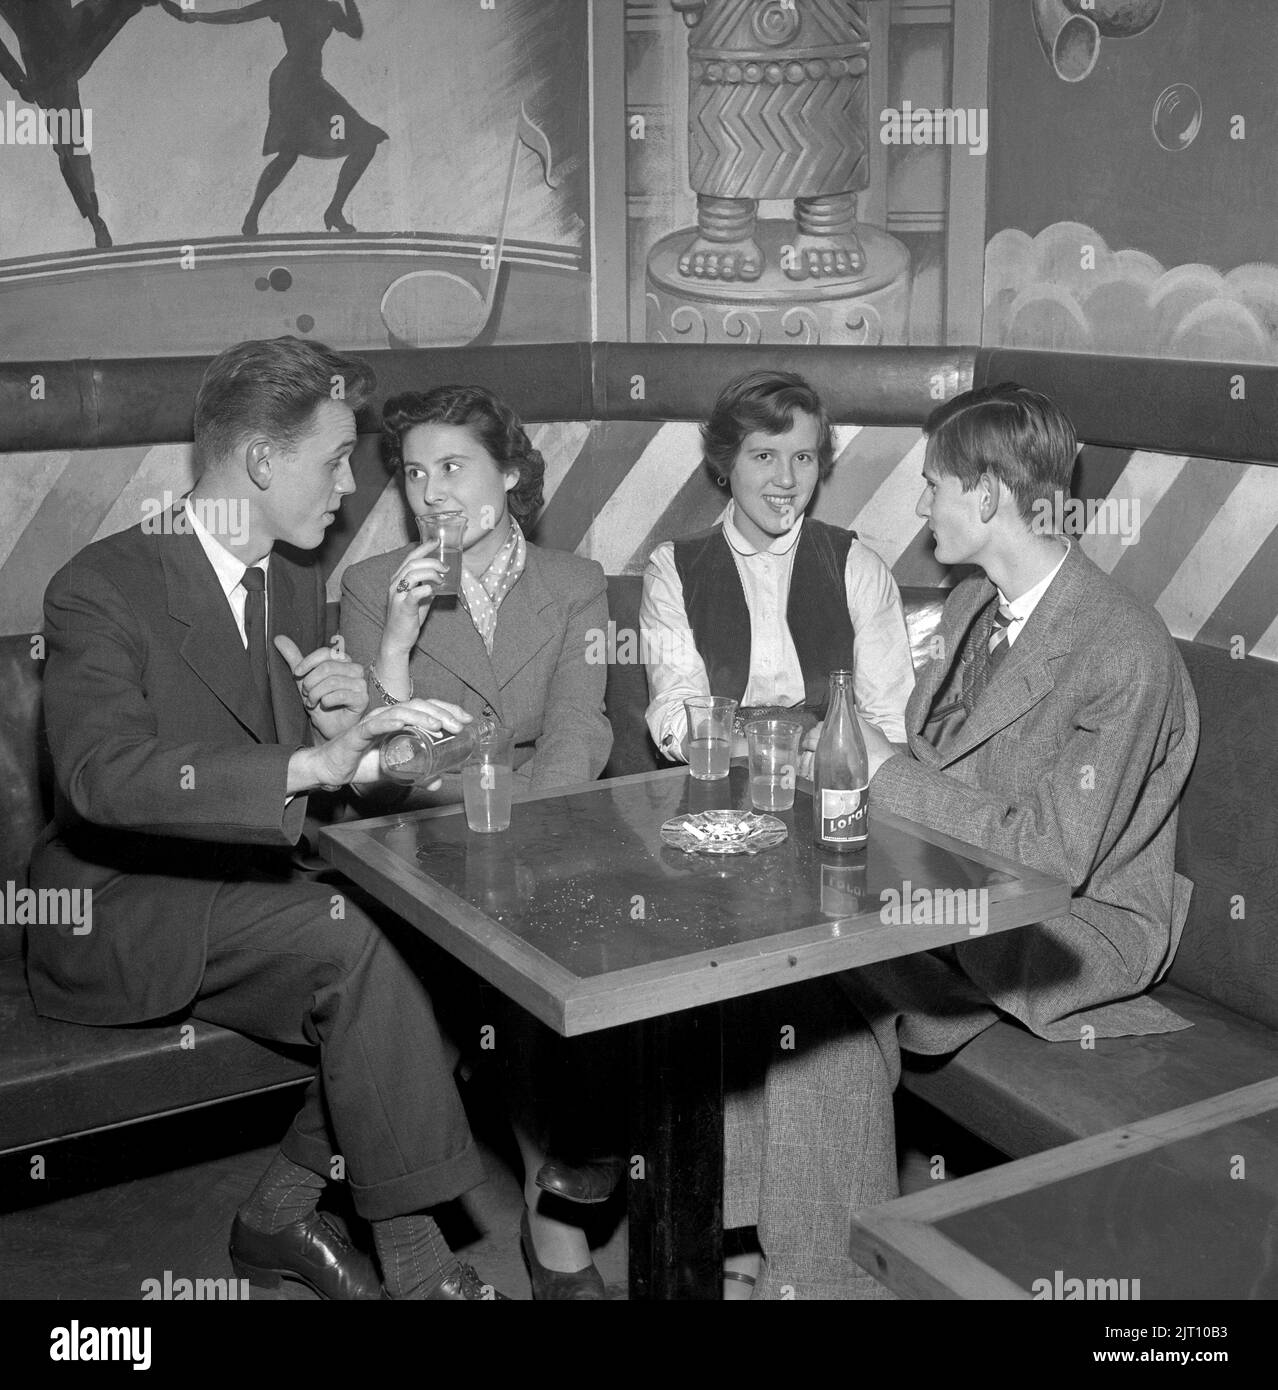 In der 1950s. Zwei junge Paare in der Bar im Nalen Dance Establishment in Stockholm, die damals keine alkoholischen Getränke erlaubten. Rauchen ist jedoch in Ordnung. Schweden 1951 Conard Ref. 1871 Stockfoto